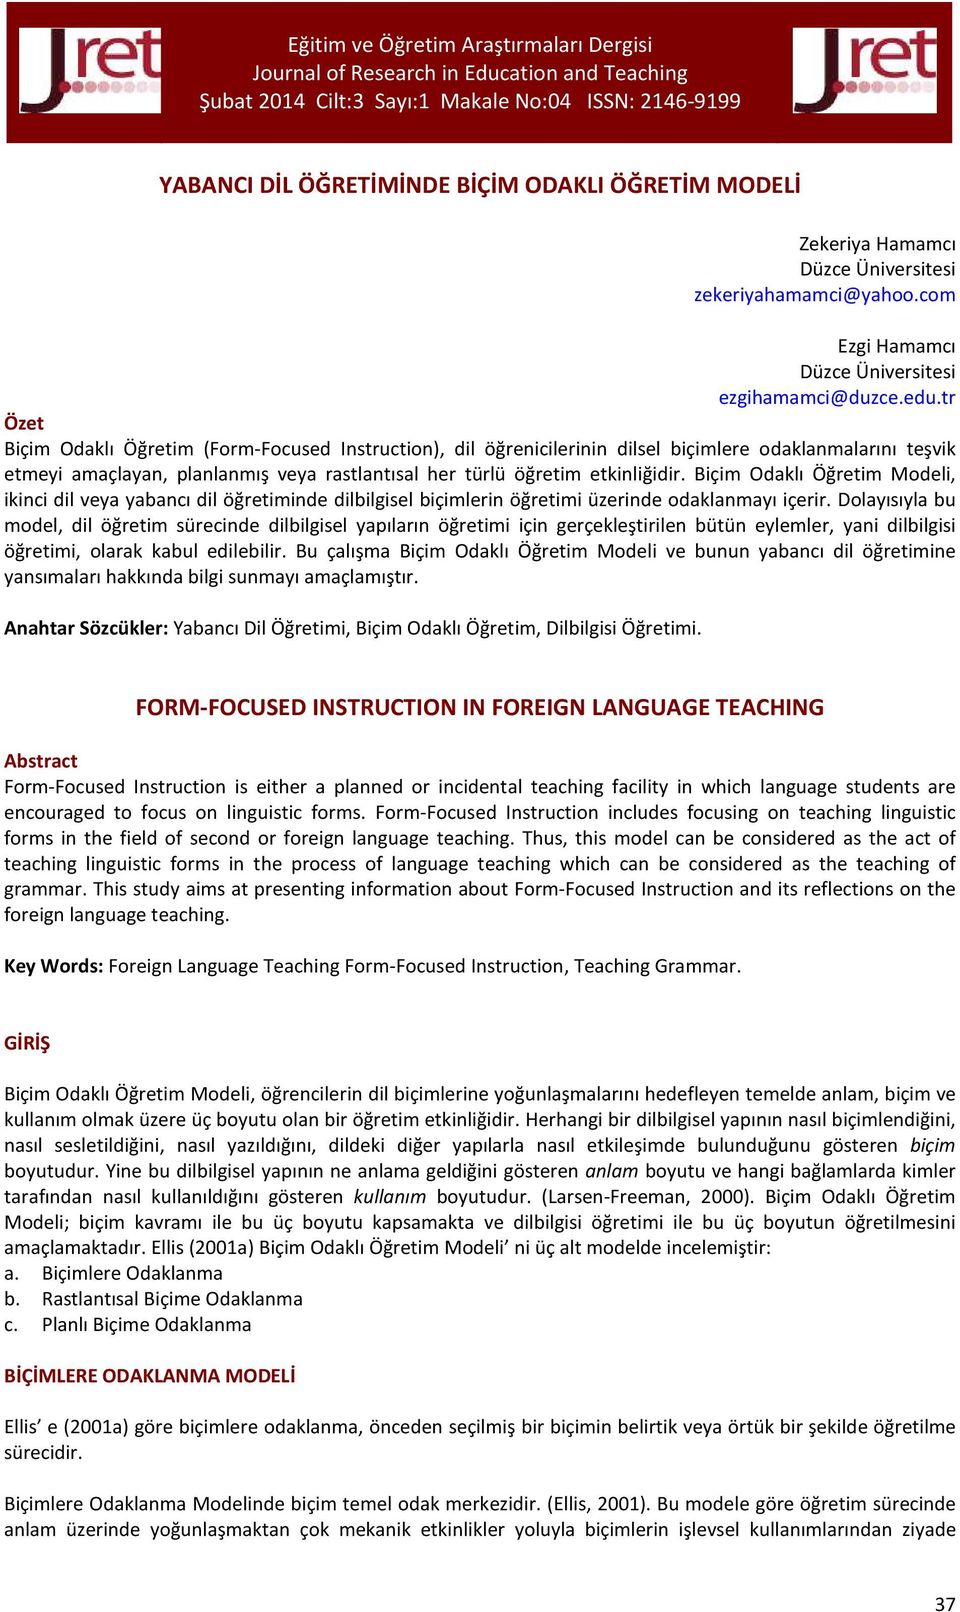 Biçim Odaklı Öğretim Modeli, ikinci dil veya yabancı dil öğretiminde dilbilgisel biçimlerin öğretimi üzerinde odaklanmayı içerir.